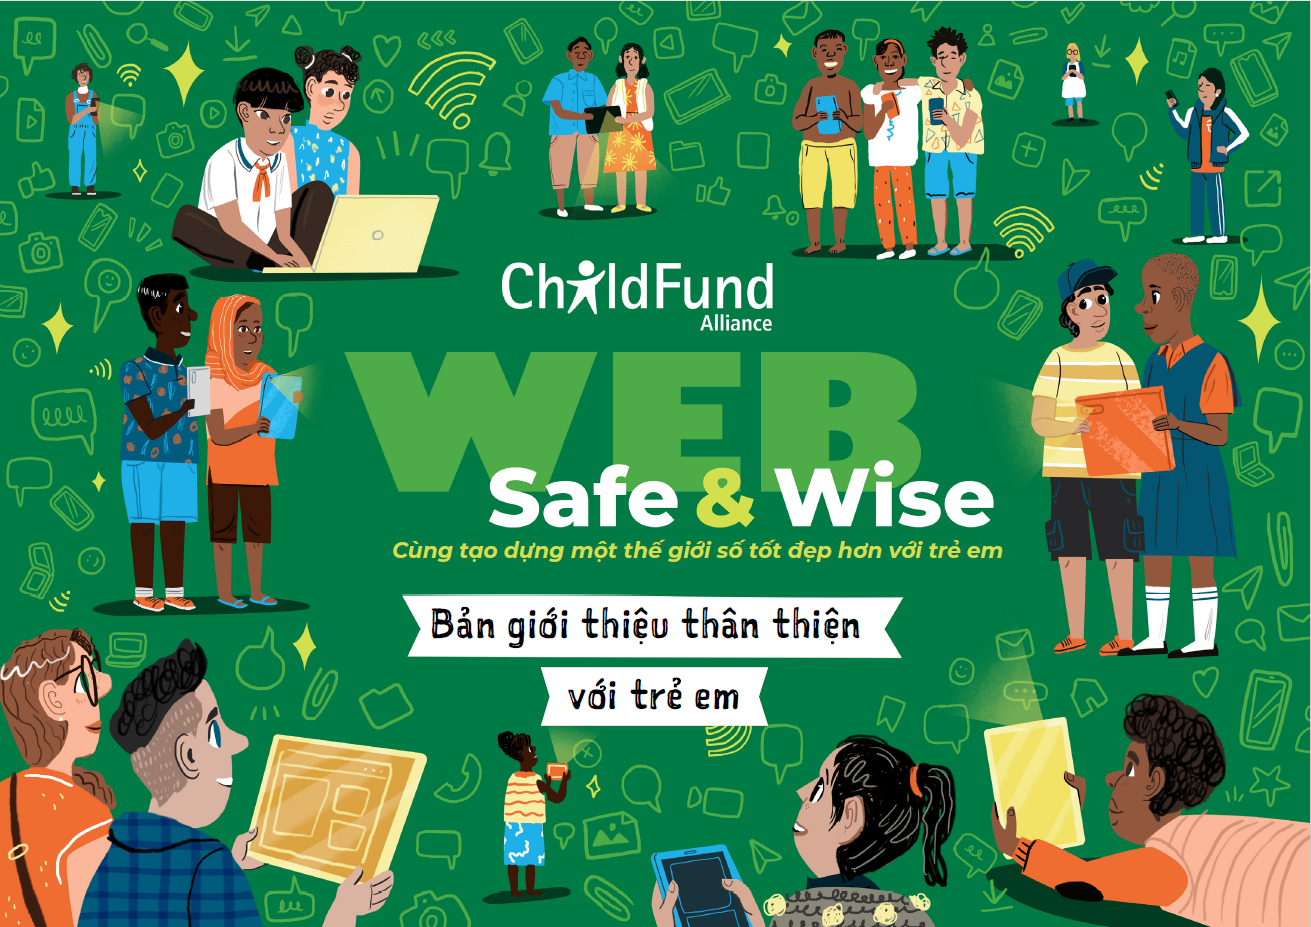 IEC – Bản giới thiệu thân thiện với trẻ em Web Safe & Wise